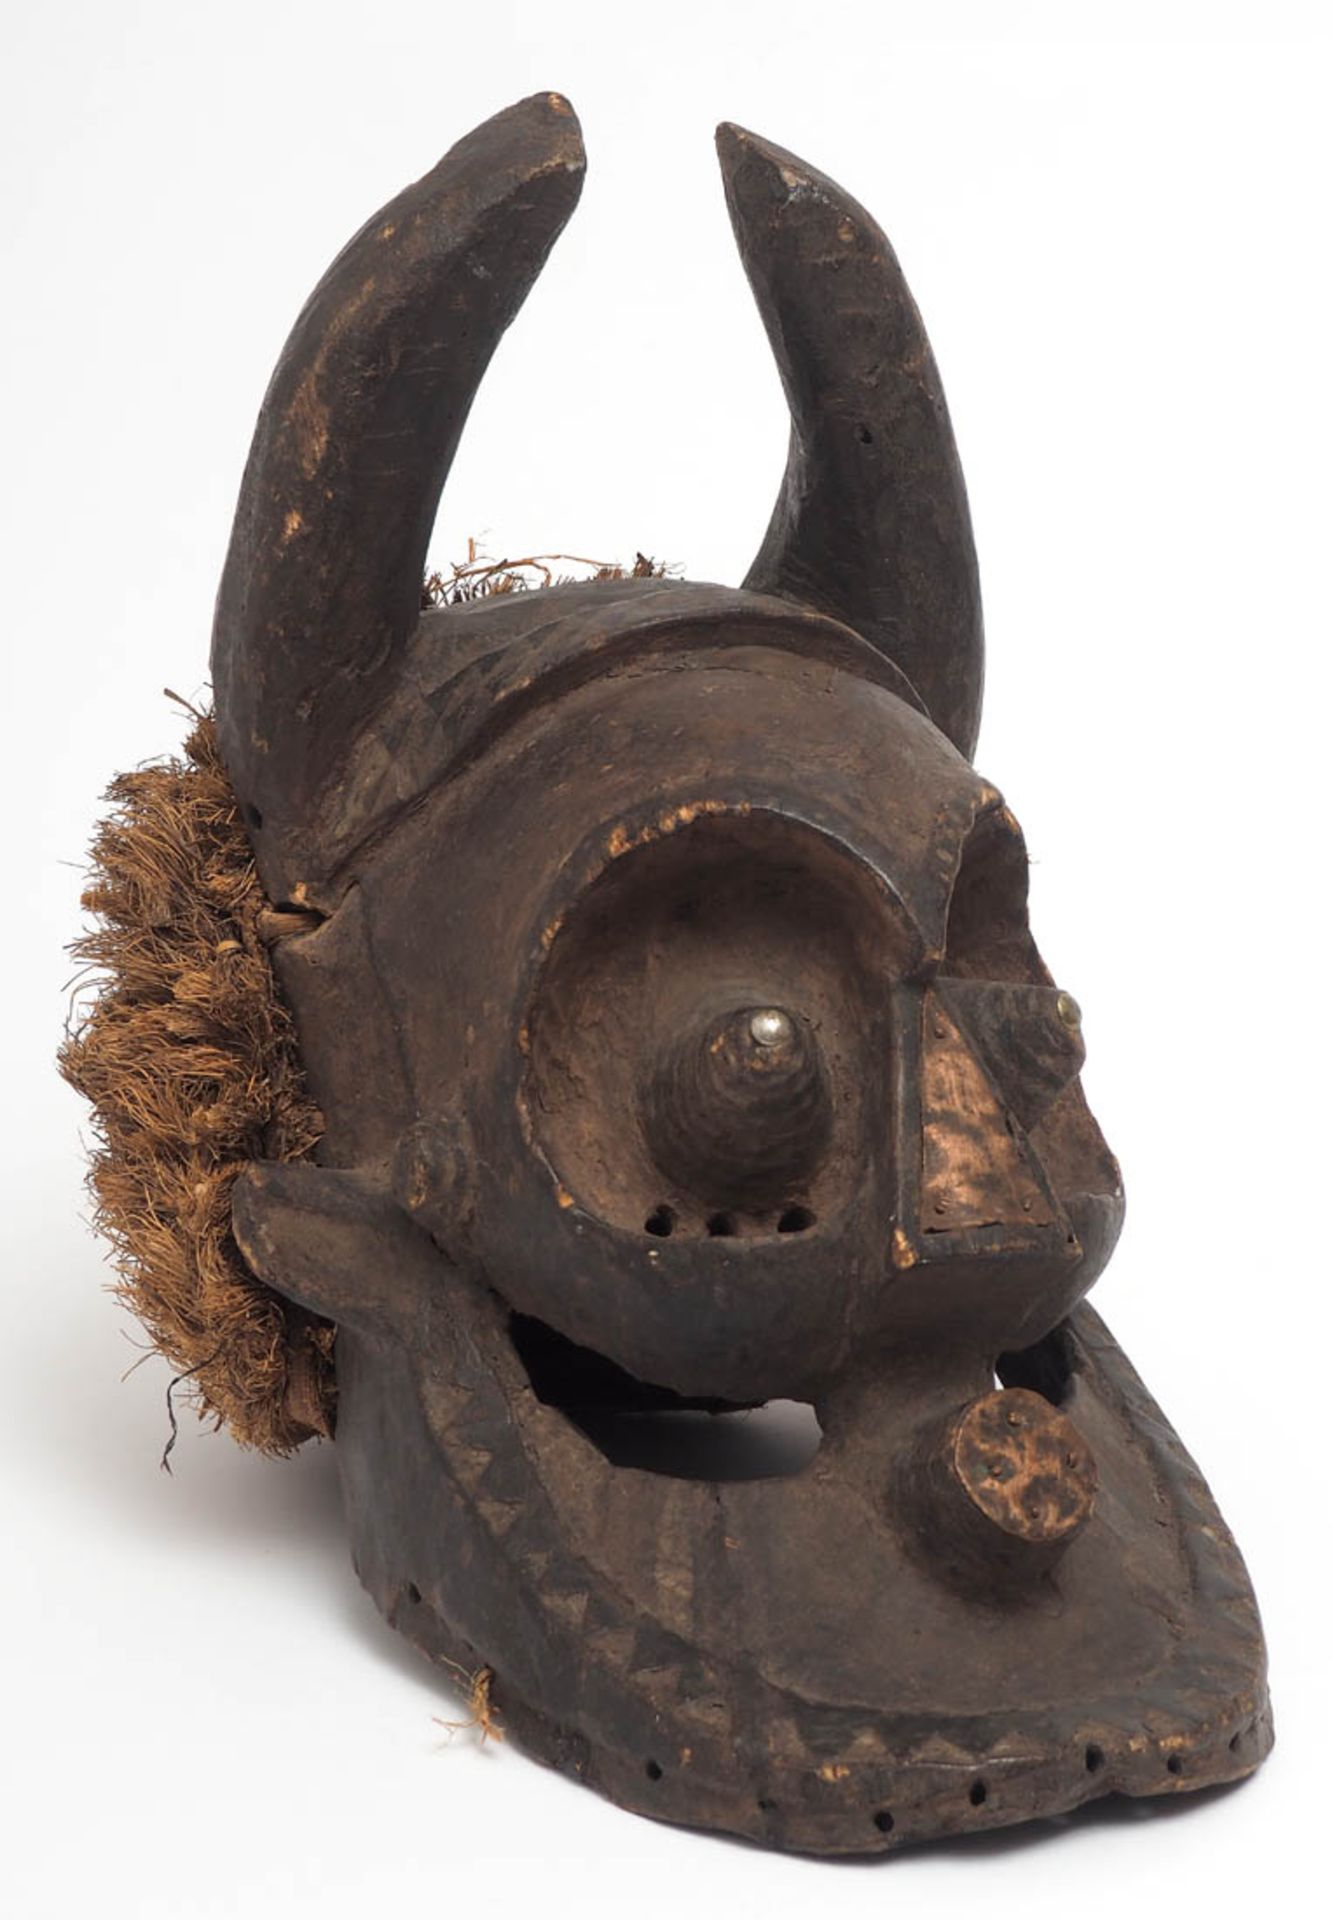 Chamäleon-Maske, "Pwoo Itok", Kuba, Dem. Rep. Kongo Gehörntes Gesicht mit hervorstechenden Augen.